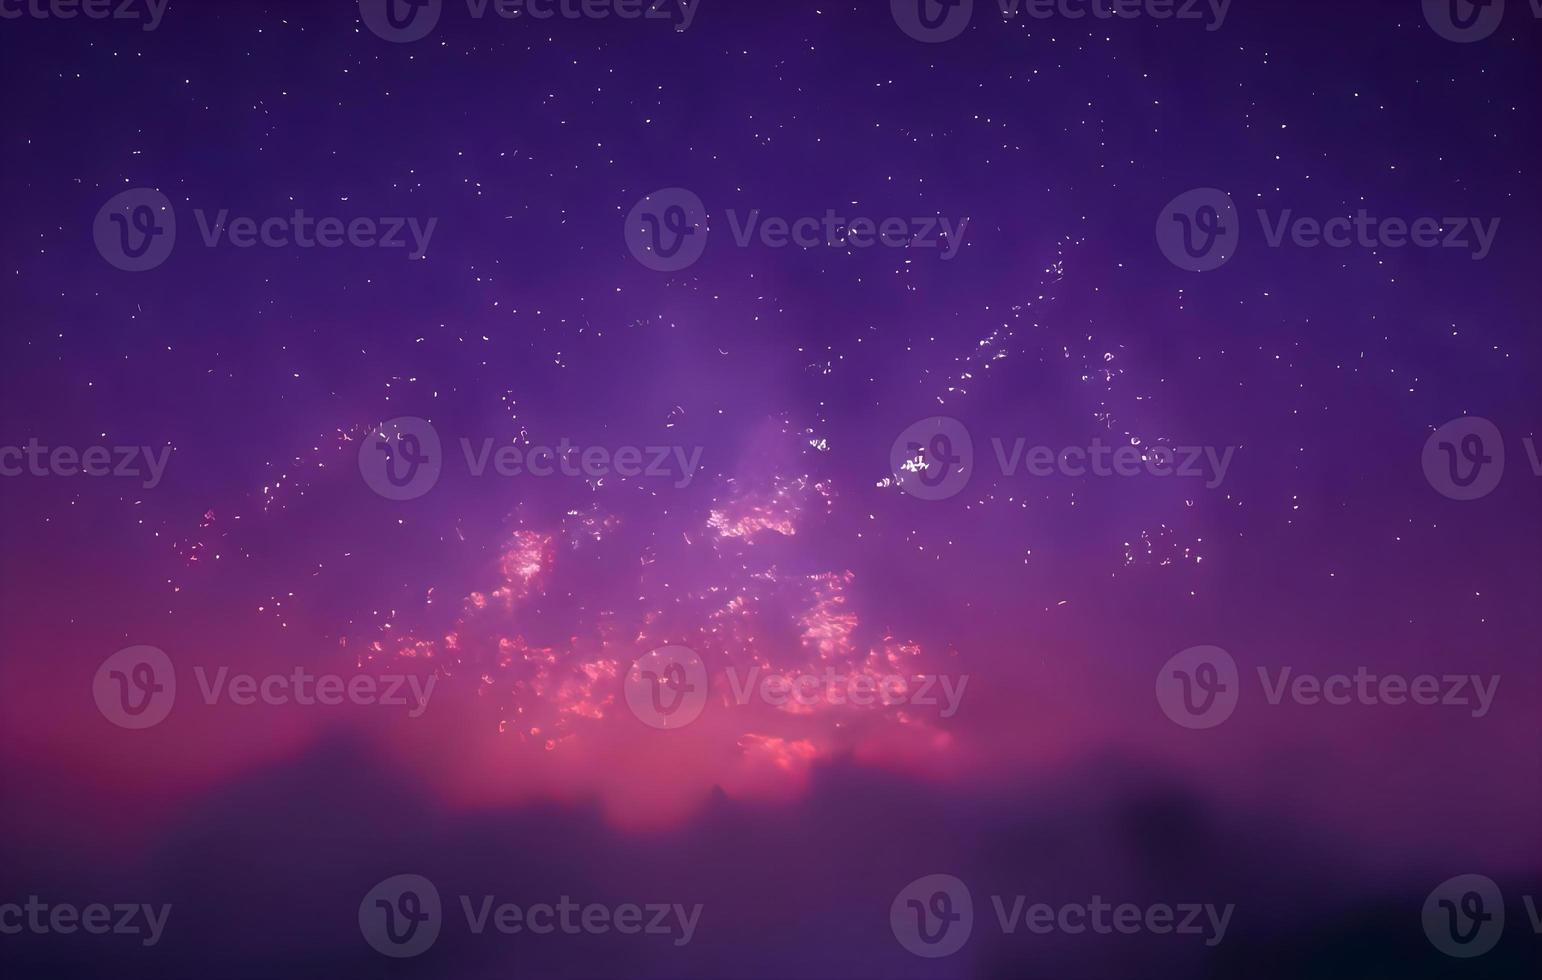 paysage de nuit montagne et fond de galaxie milkyway , longue exposition , faible luminosité photo